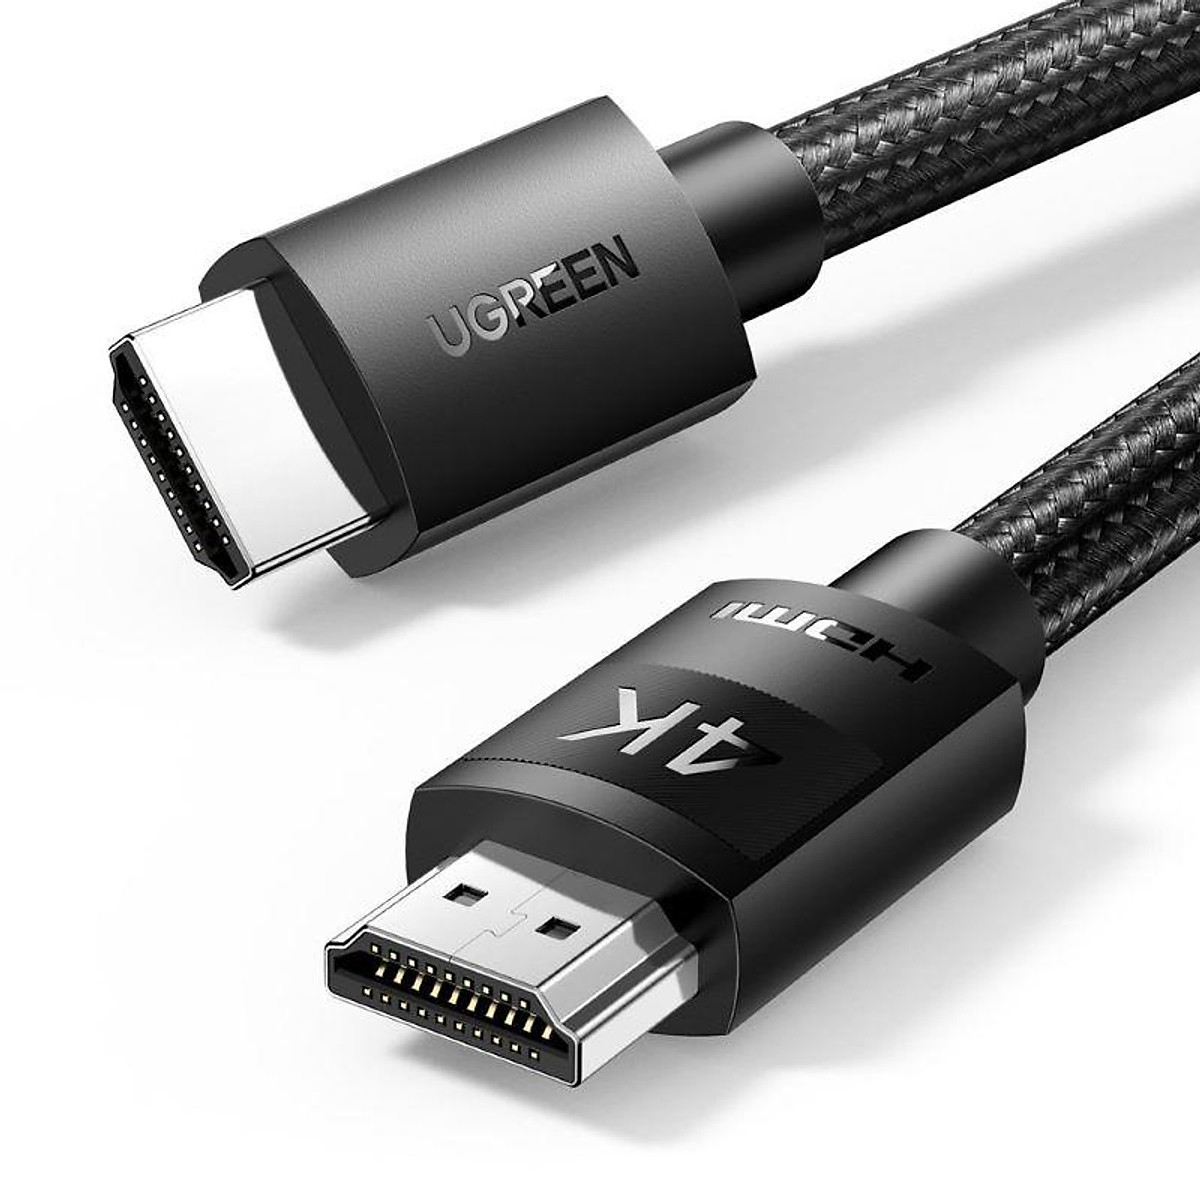 Cáp HDMI 4K mang lại một trải nghiệm tuyệt vời cho bạn khi sử dụng các thiết bị độ phân giải cao như TV, máy tính, hoặc đầu phát. Với cáp HDMI 4K, bạn sẽ thấy được chất lượng hình ảnh rõ nét và chân thực hơn bao giờ hết. Tìm hiểu thêm về cáp HDMI 4K qua hình ảnh liên quan dưới đây.